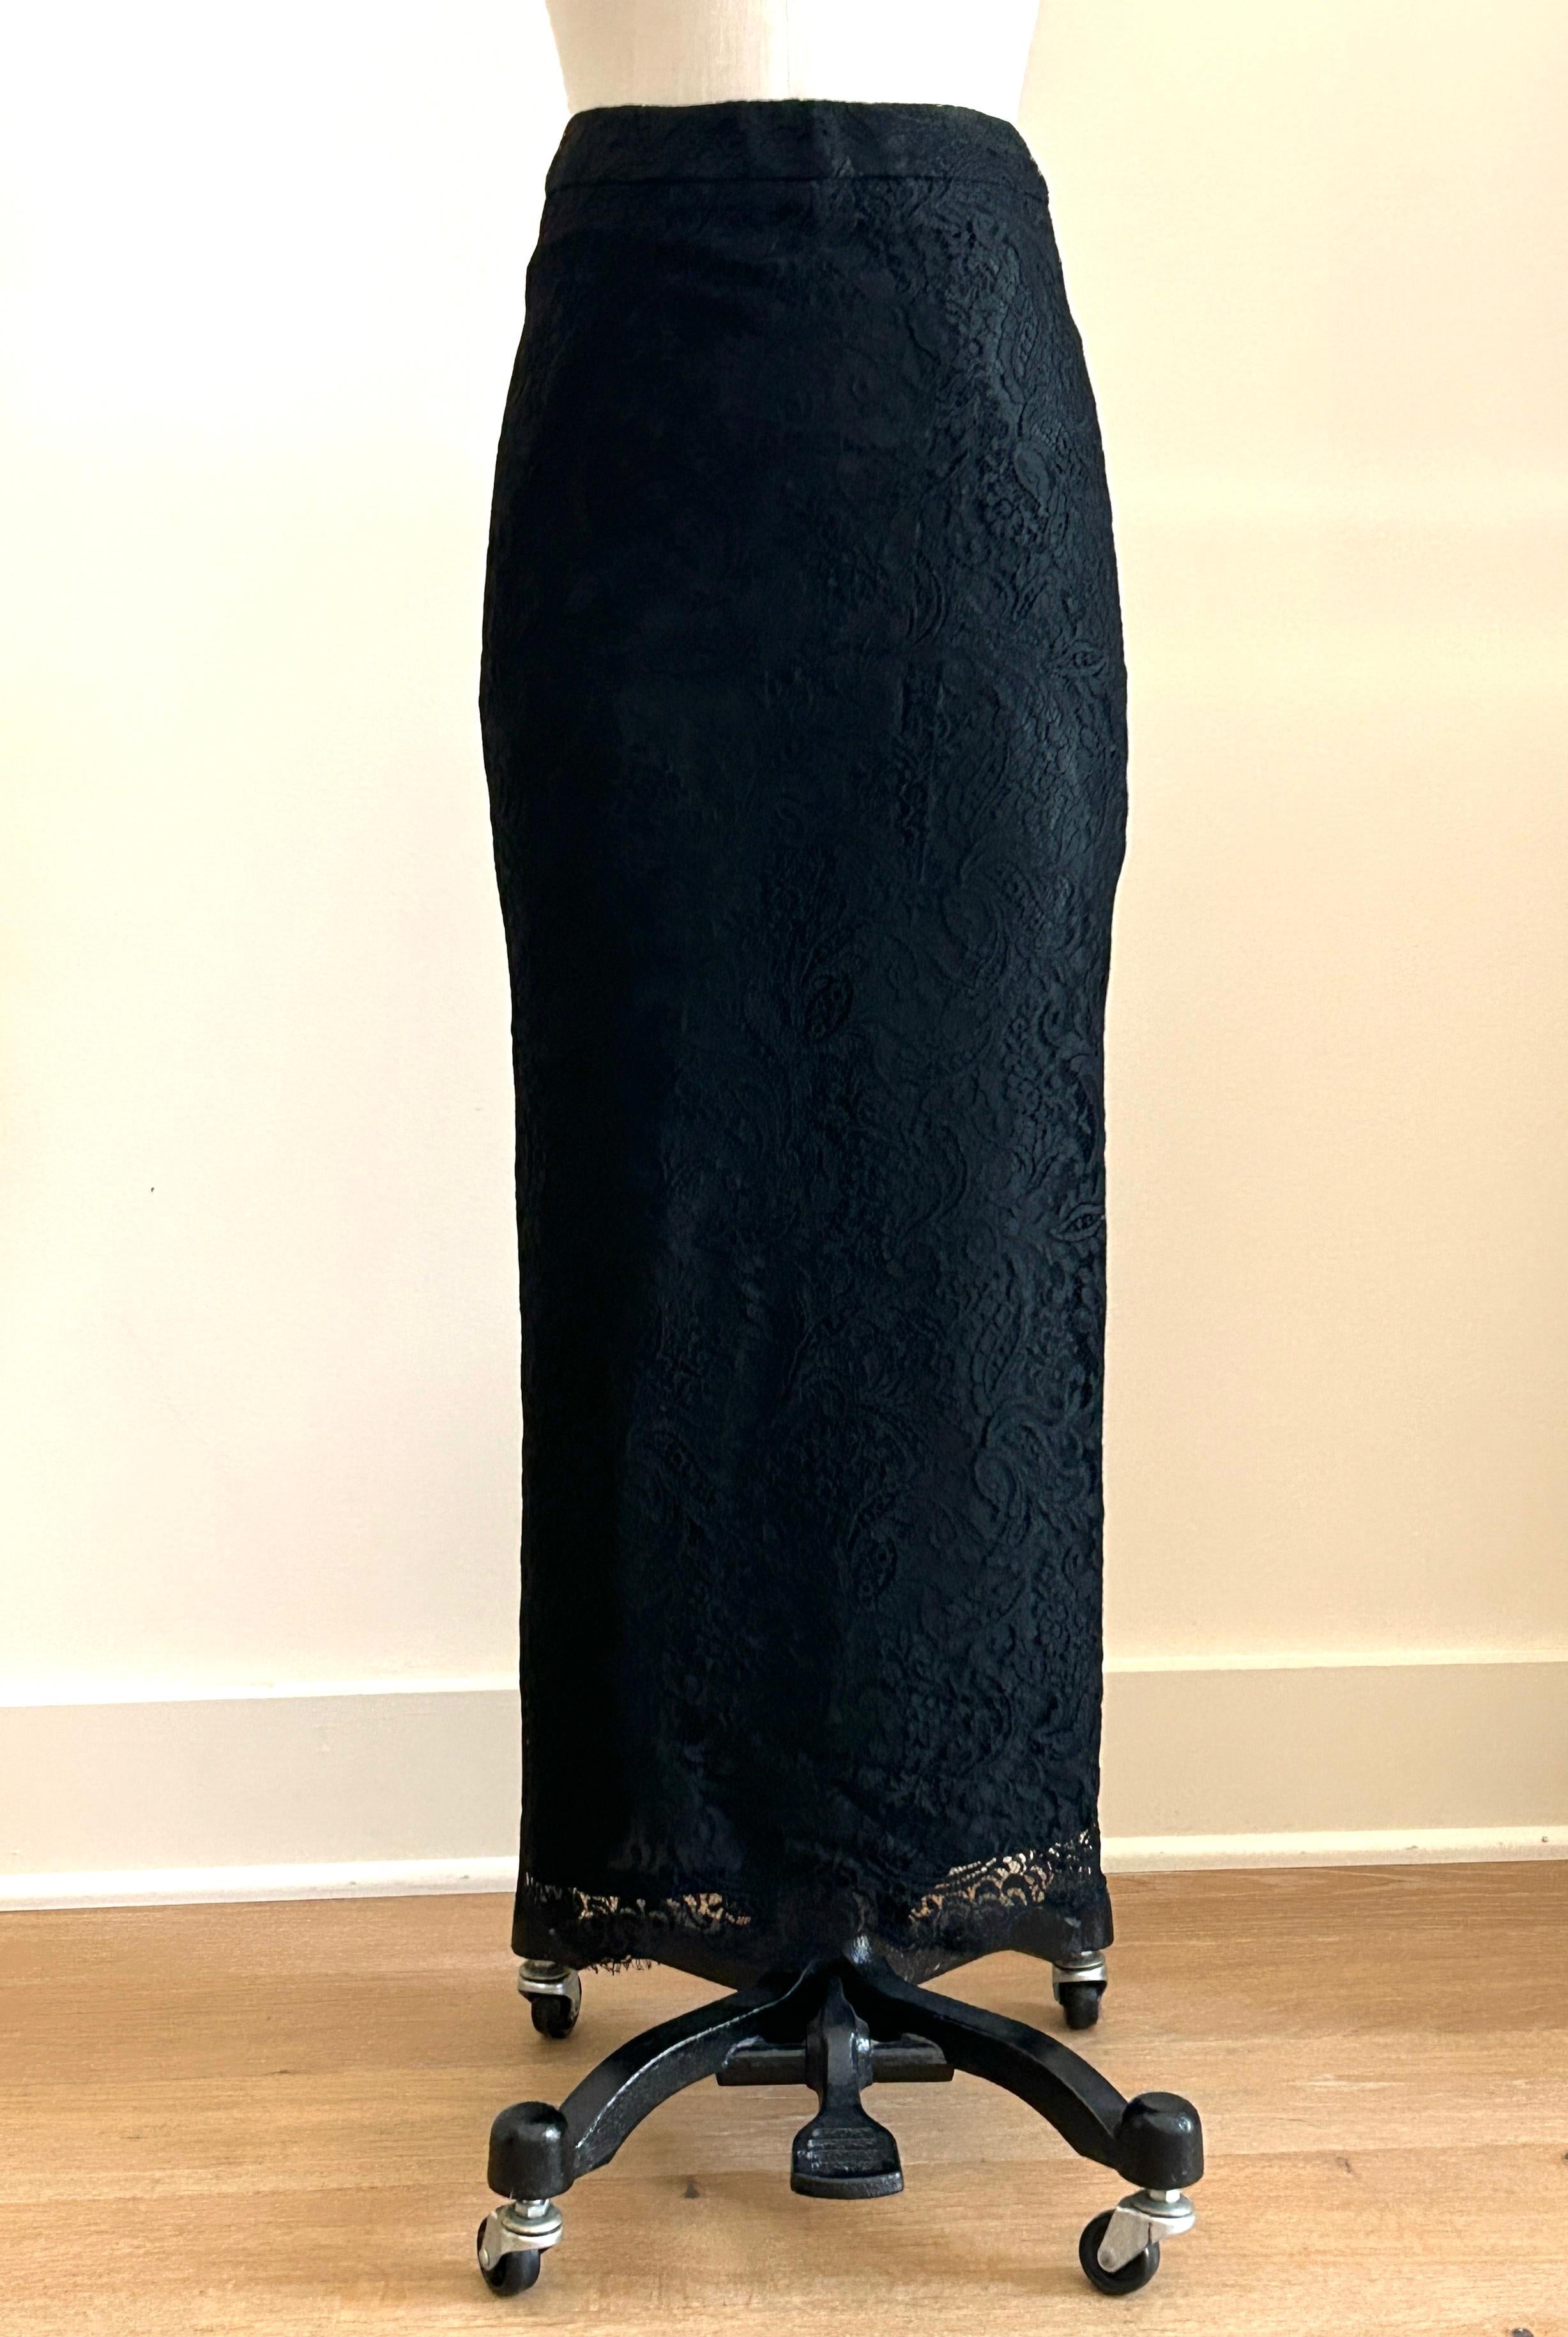 Longue jupe en dentelle florale noire d'Alexander McQueen avec une légère traîne dans le dos, circa 1990 ou début 2000. Étonnamment ajusté avec un ourlet festonné. Fermeture à glissière et bouton au dos. 

La taille de ce modèle varie de midi à maxi